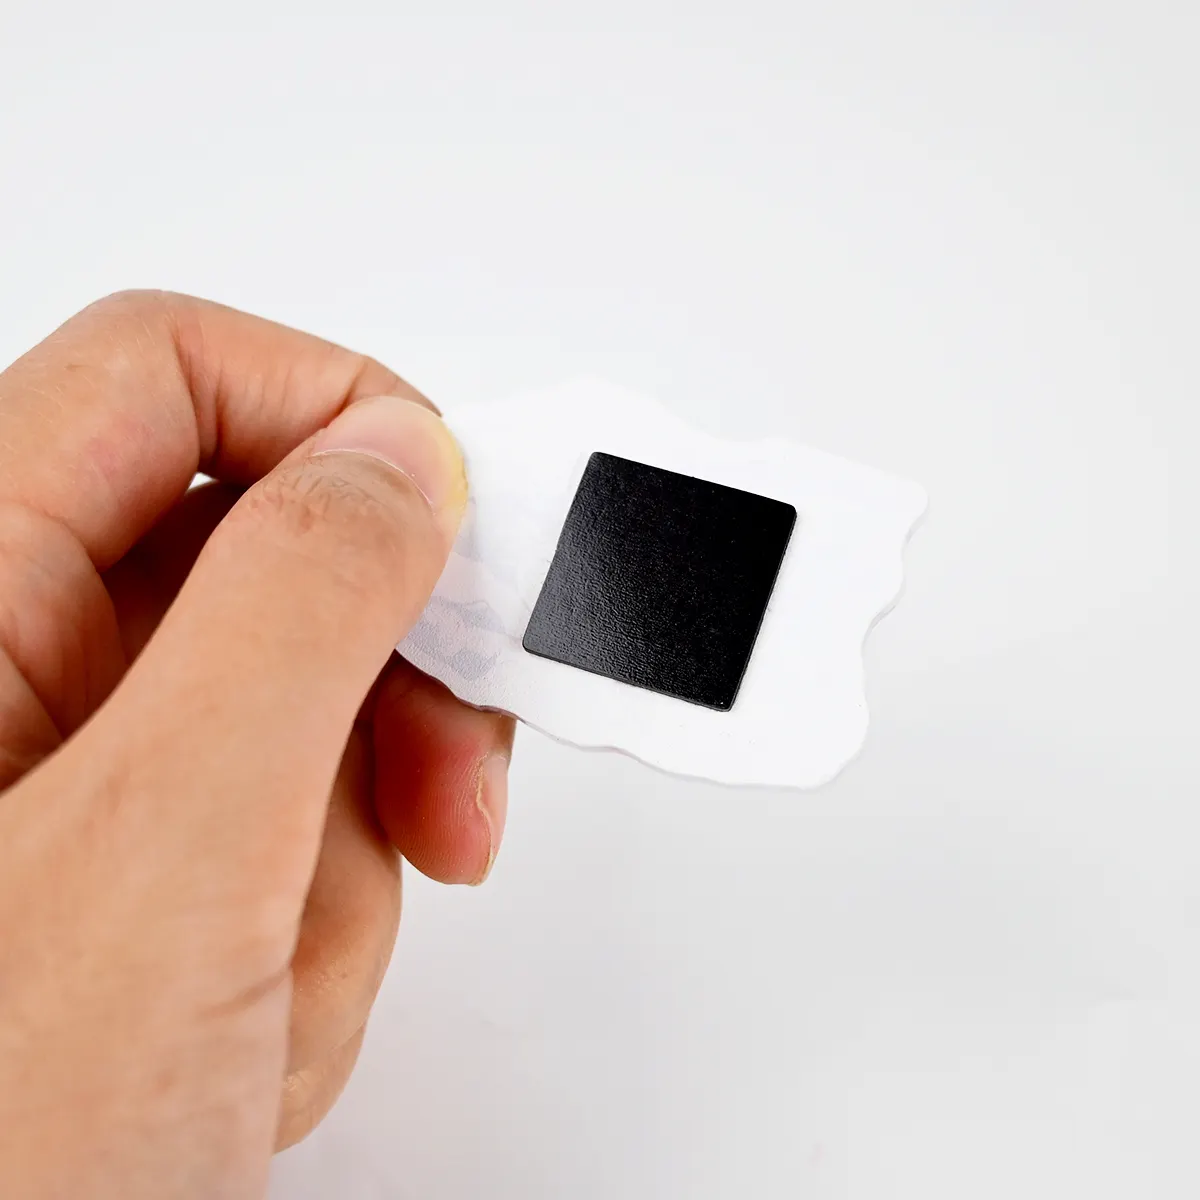 कस्टम प्रिंटिंग केपीओपी रेफ्रिजरेटर मैग्नेट स्टिकर मैग्नेटिक वर्ड्स बिजनेस कार्ड ऐक्रेलिक फ्रिज मैग्नेट